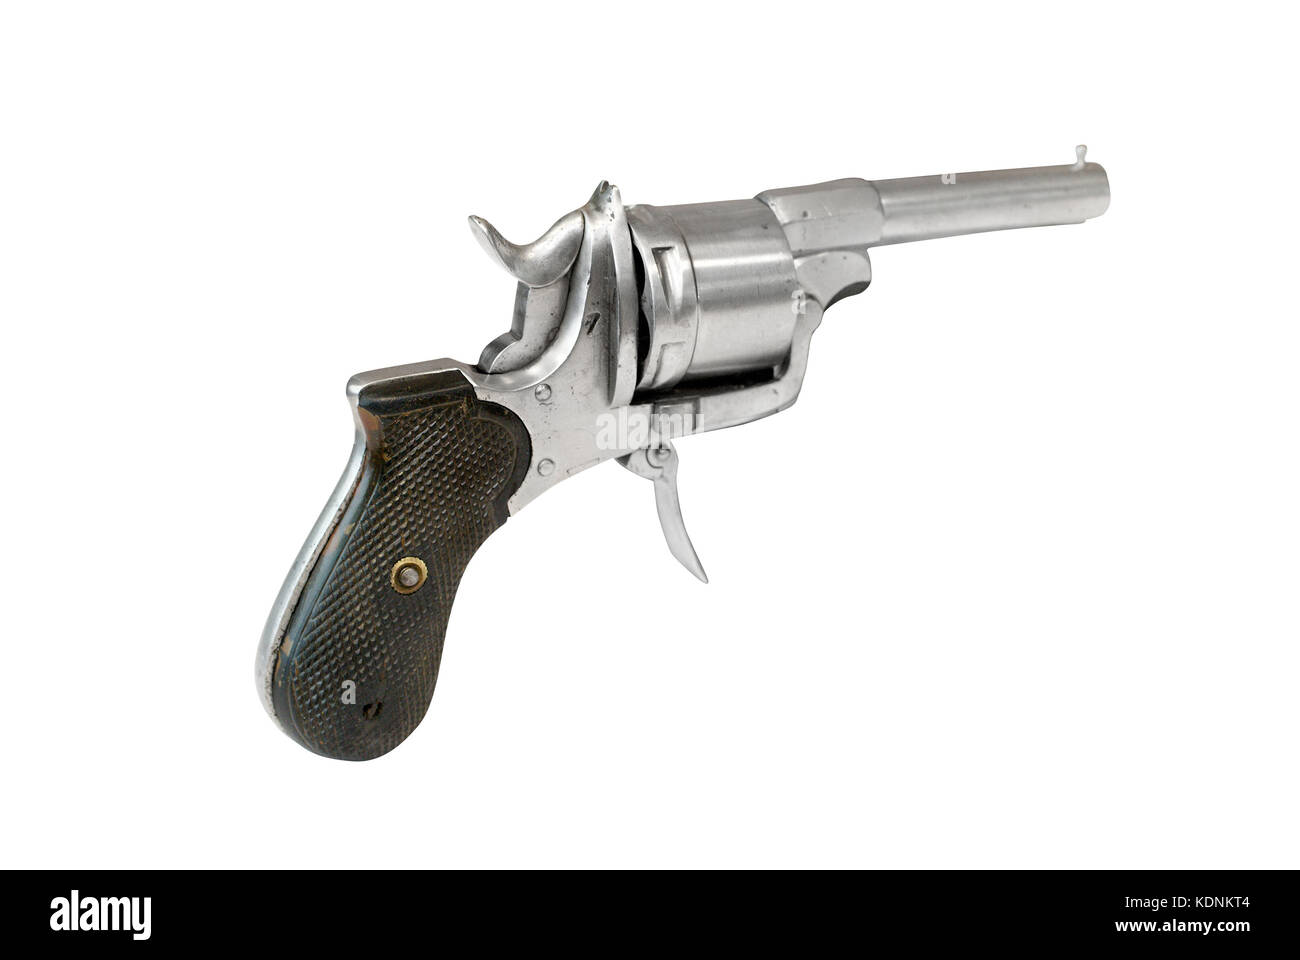 Britische Revolver (PISTO) unter dem Namen "British Bulldog" war sehr beliebt in der abgelegenen Ecken der britischen empireat Ende des 19. Jahrhunderts. Stockfoto